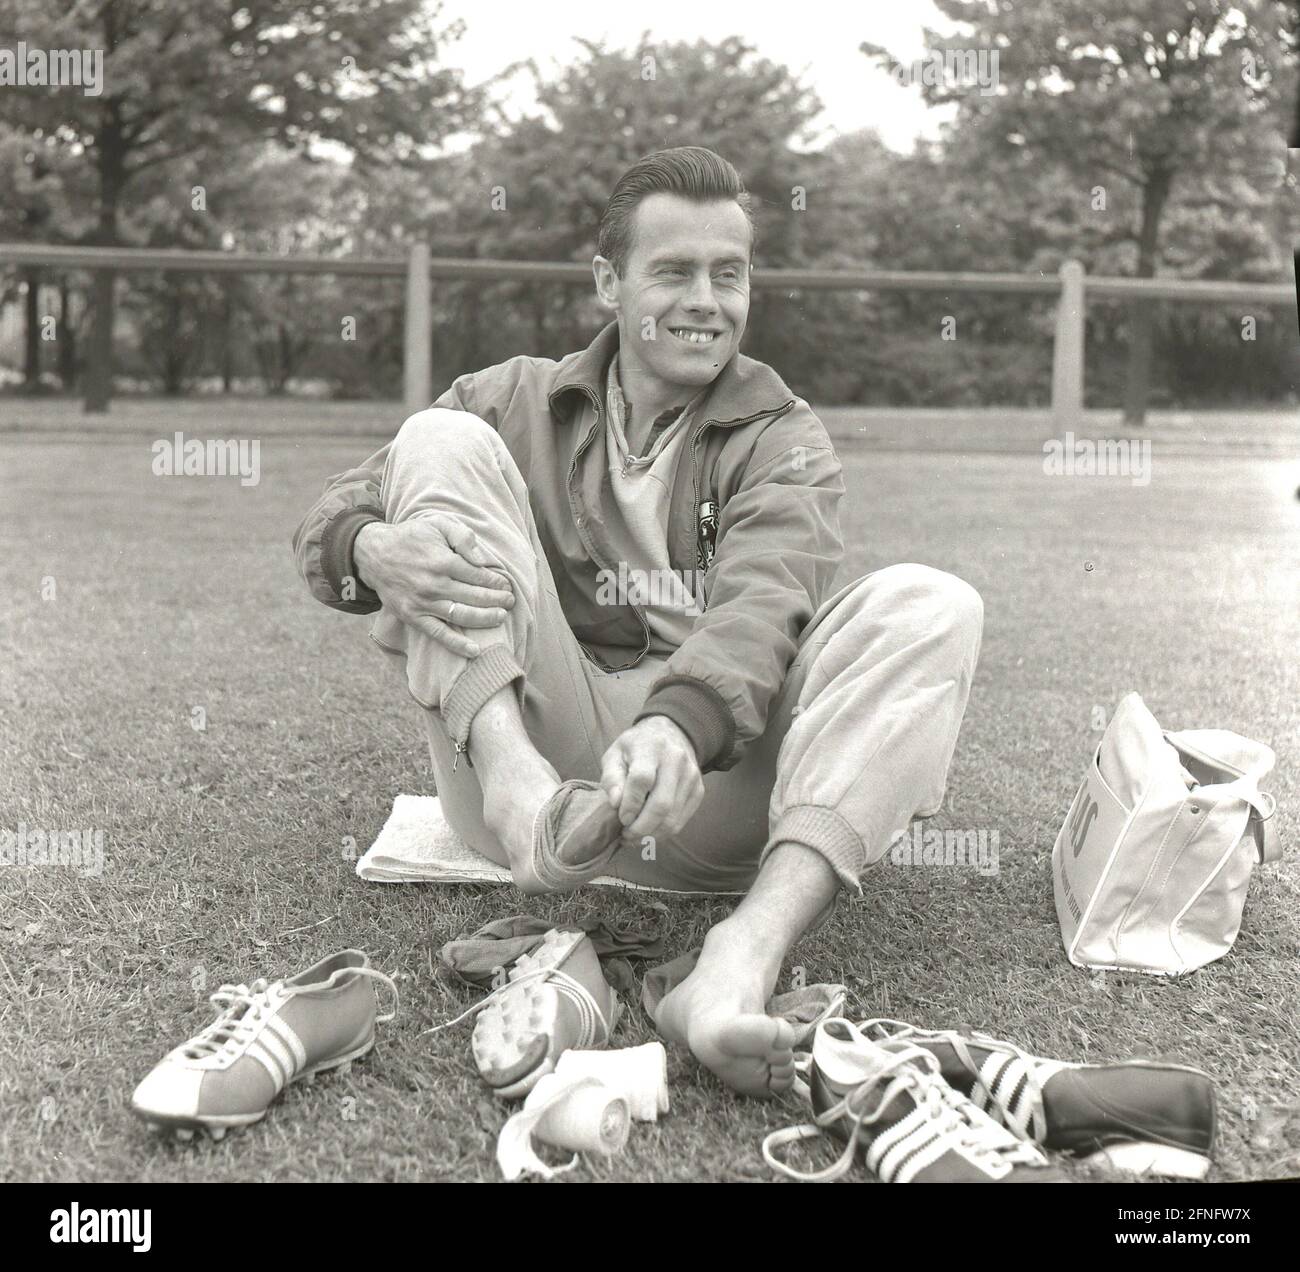 Coupe du monde de football 1958 en Suède : dans les quartiers allemands de Bjärred 17.06.1958 : Alfred Kelbassa (Allemagne) se trouve sur le terrain et teste les chaussures de marque Adidas [traduction automatique] Banque D'Images